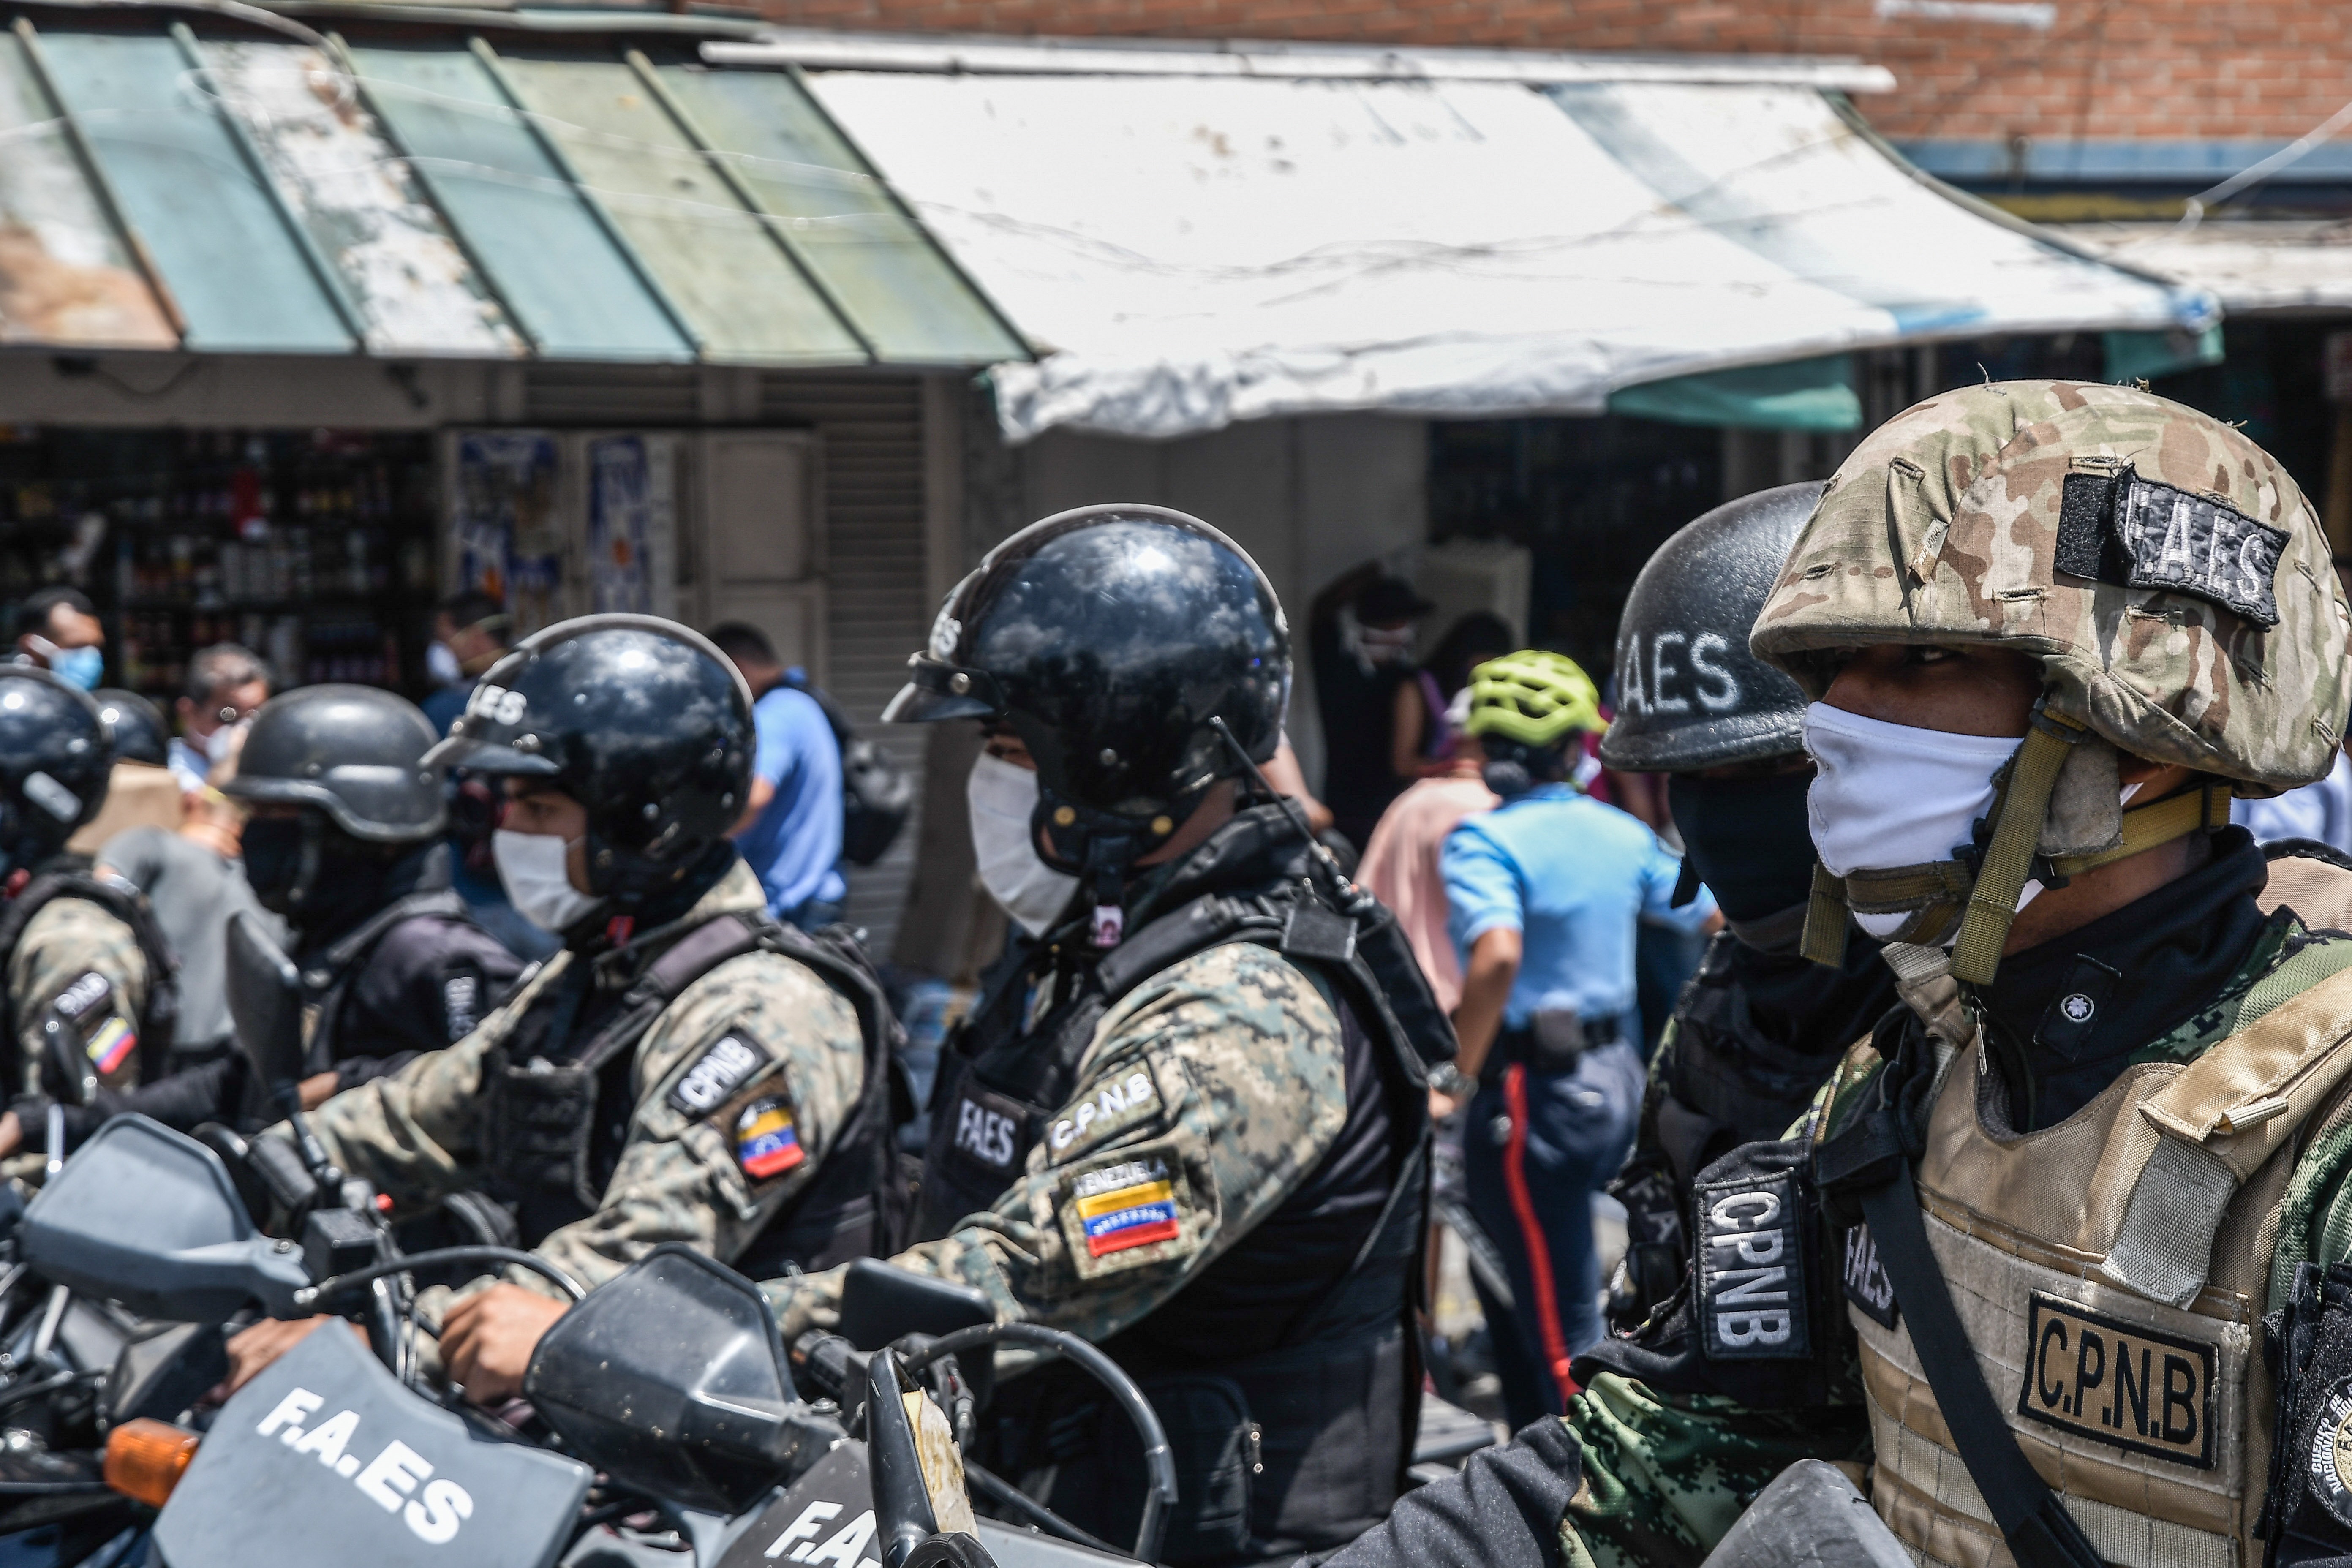 La ONU denunció “ataques, hostigamientos y amenazas” de la dictadura de Maduro contra defensores de derechos humanos venezolanos